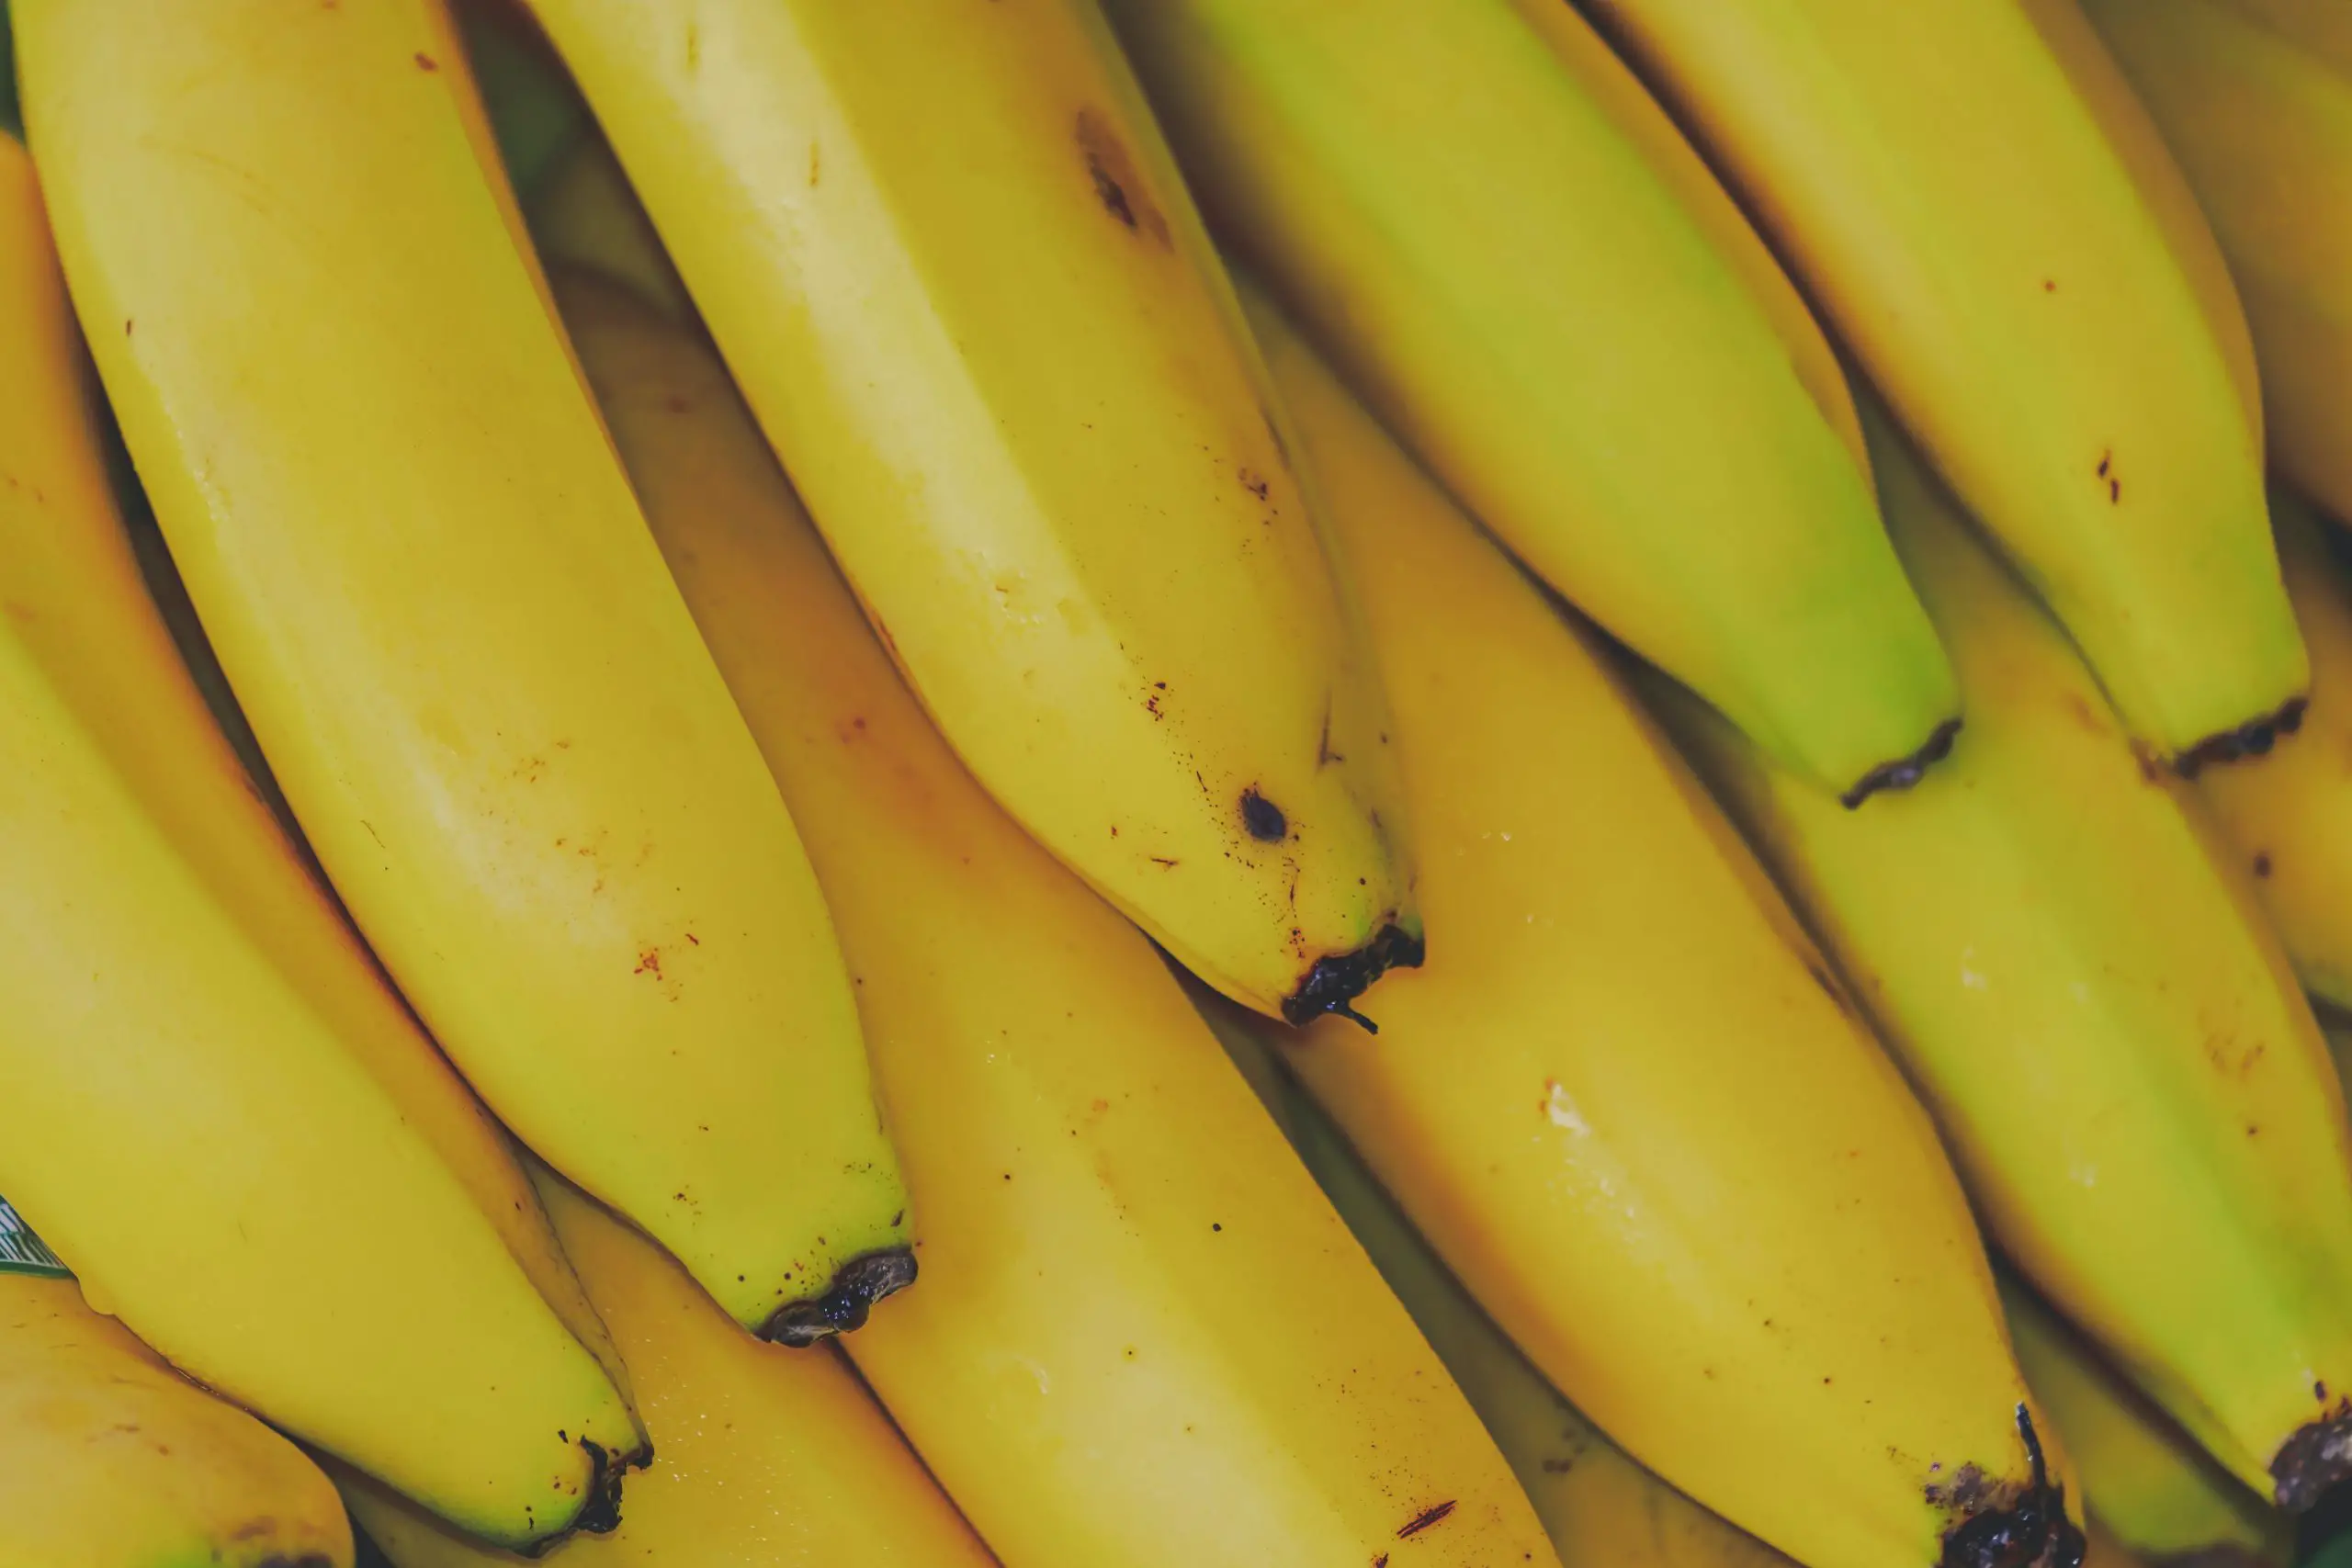 How Long Do Bananas Last in the Fridge